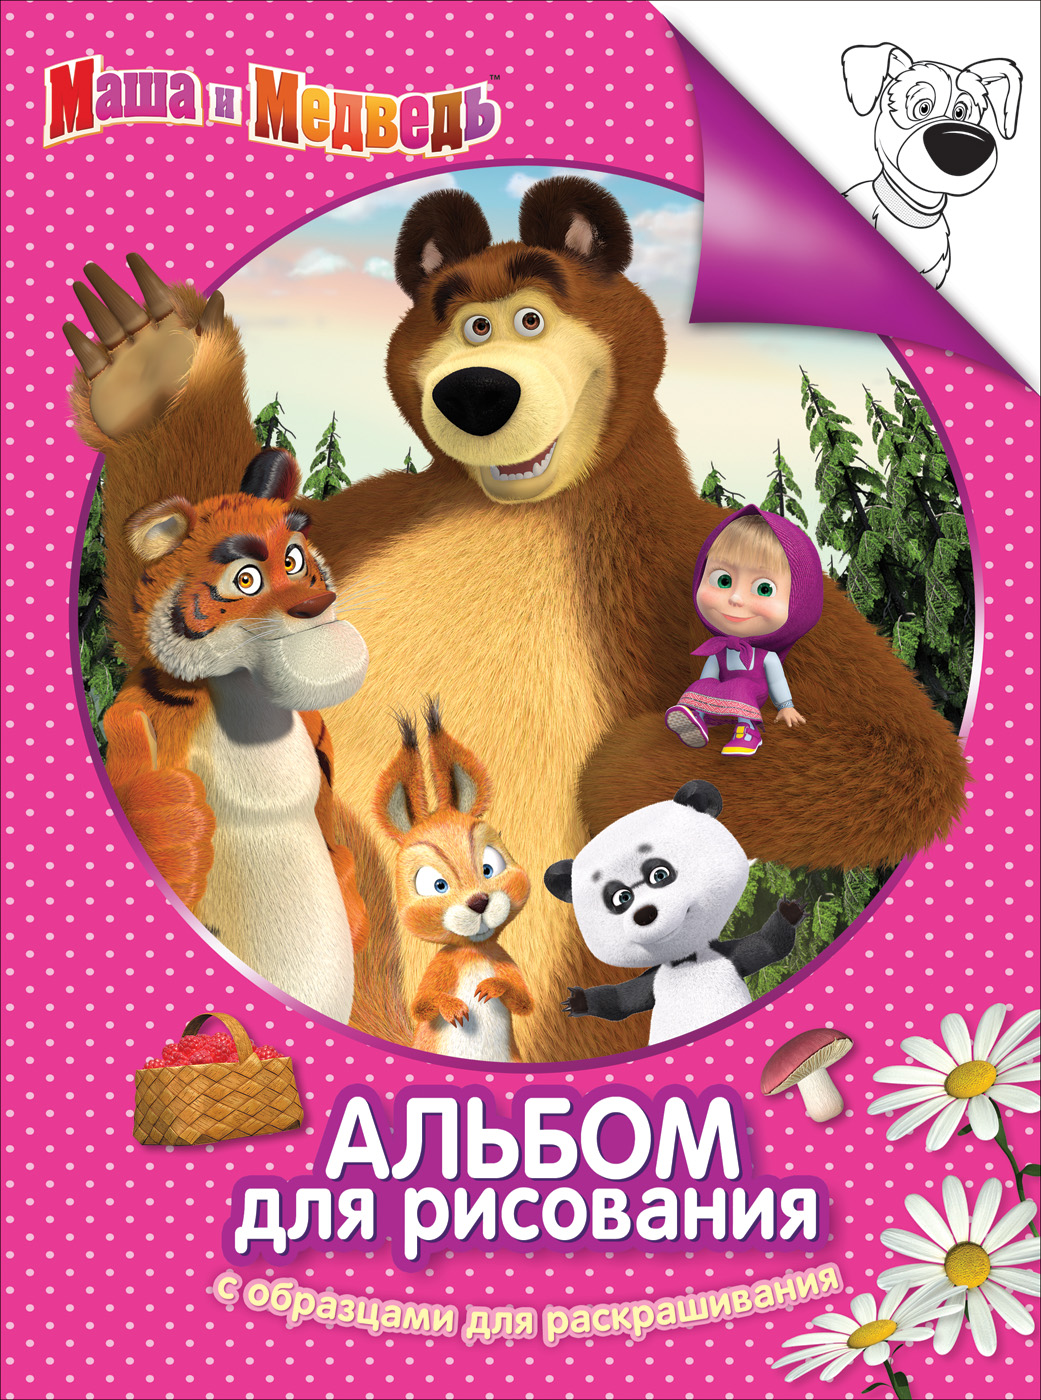 Альбом-раскраска 30915 Маша и Медведь розов Росмэн - Екатеринбург 